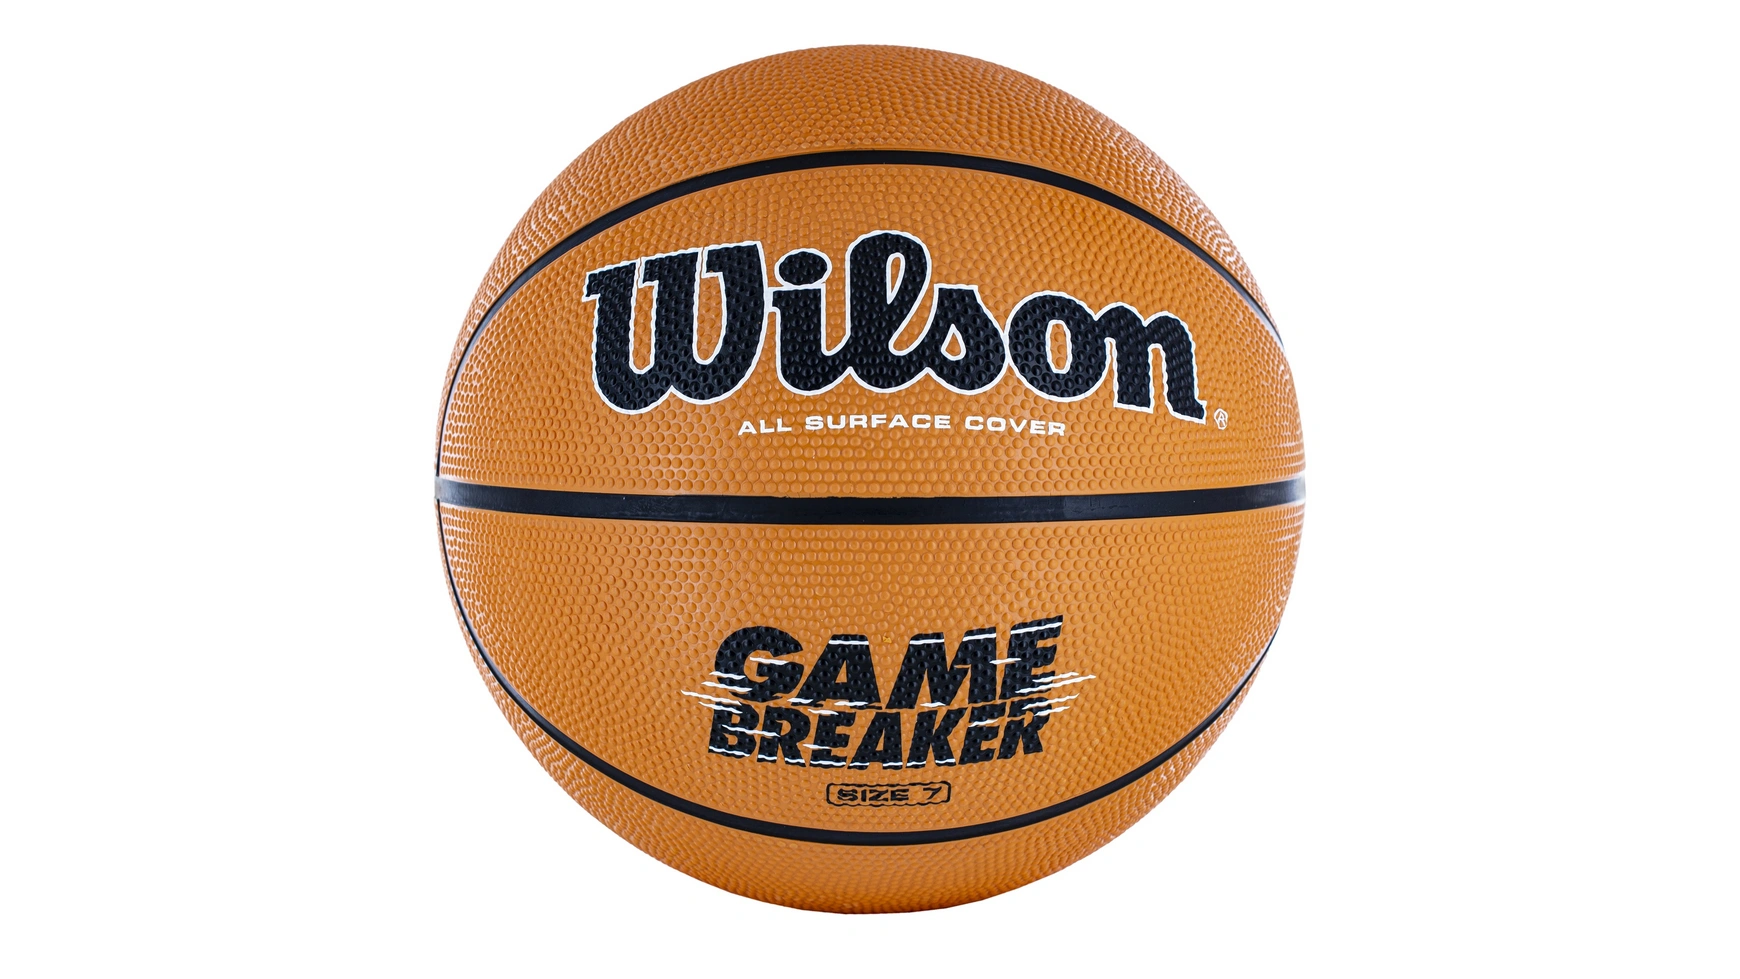 Wilson Basketball Gamebreaker, размер 7 куртка мужская wilson men черная размер xxl